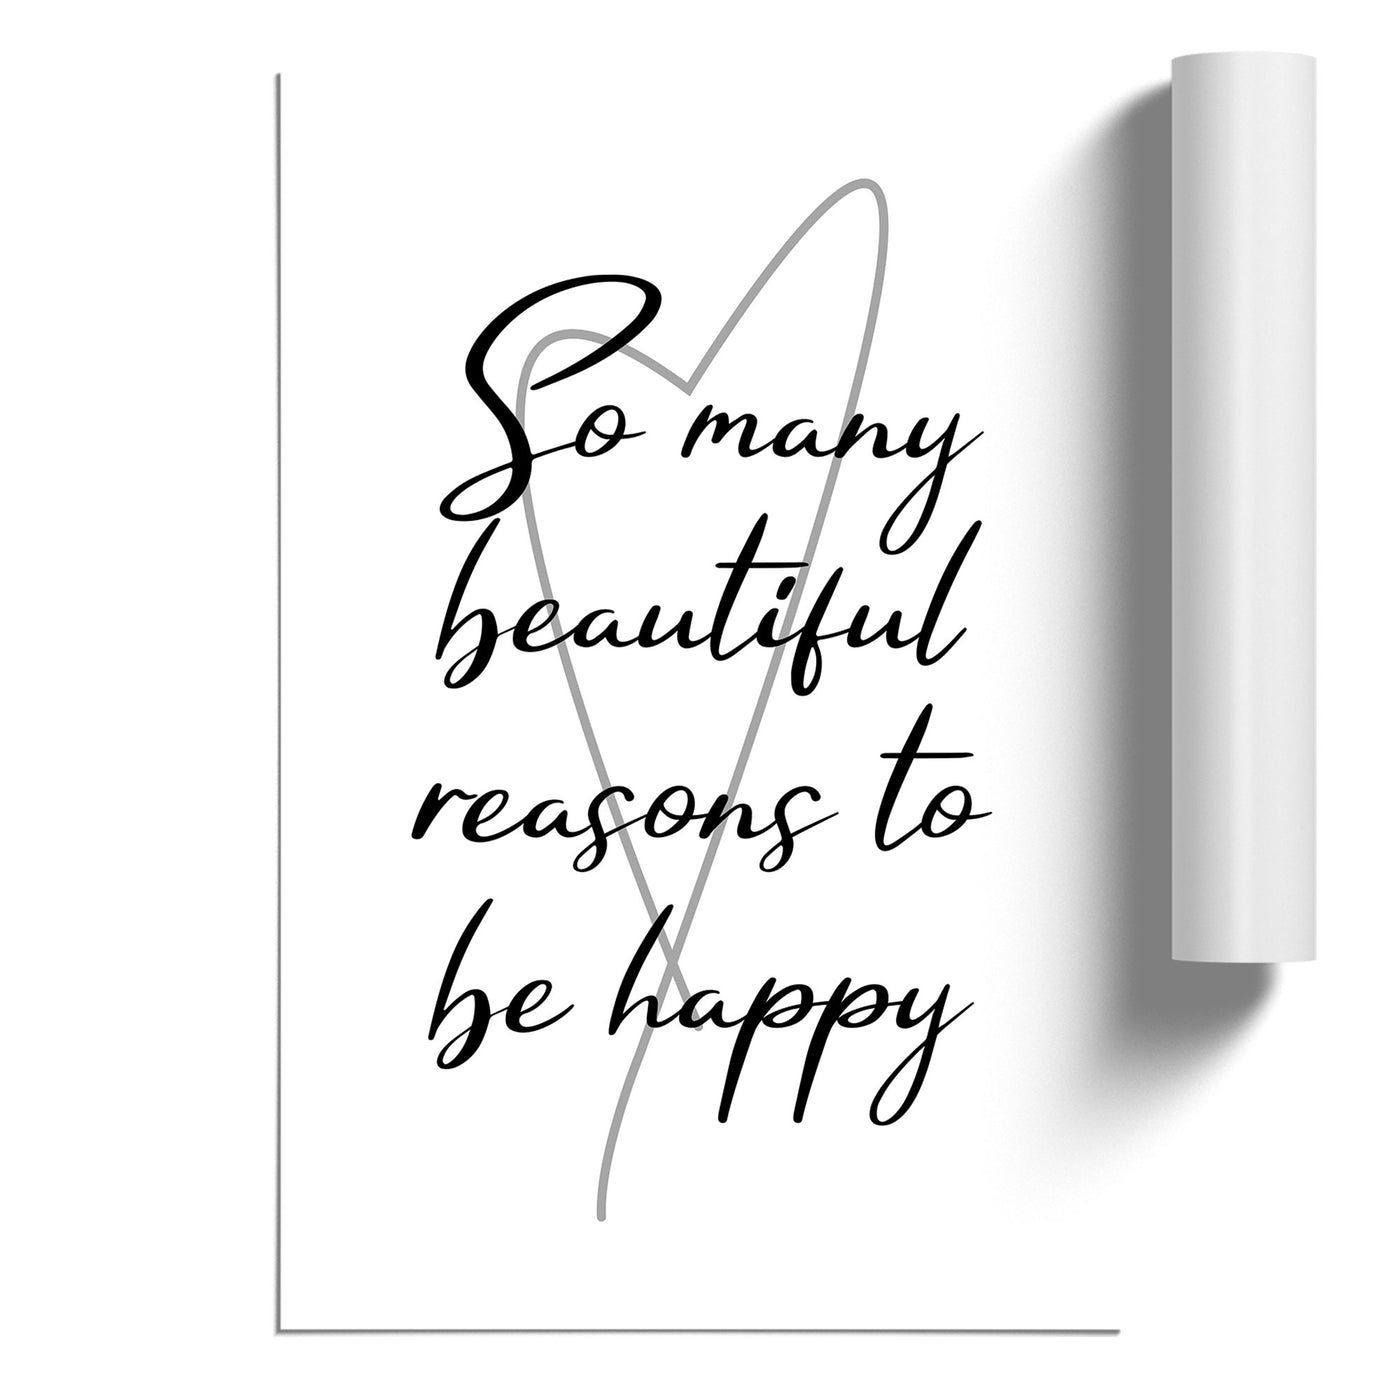 So Many Beautiful Reasons